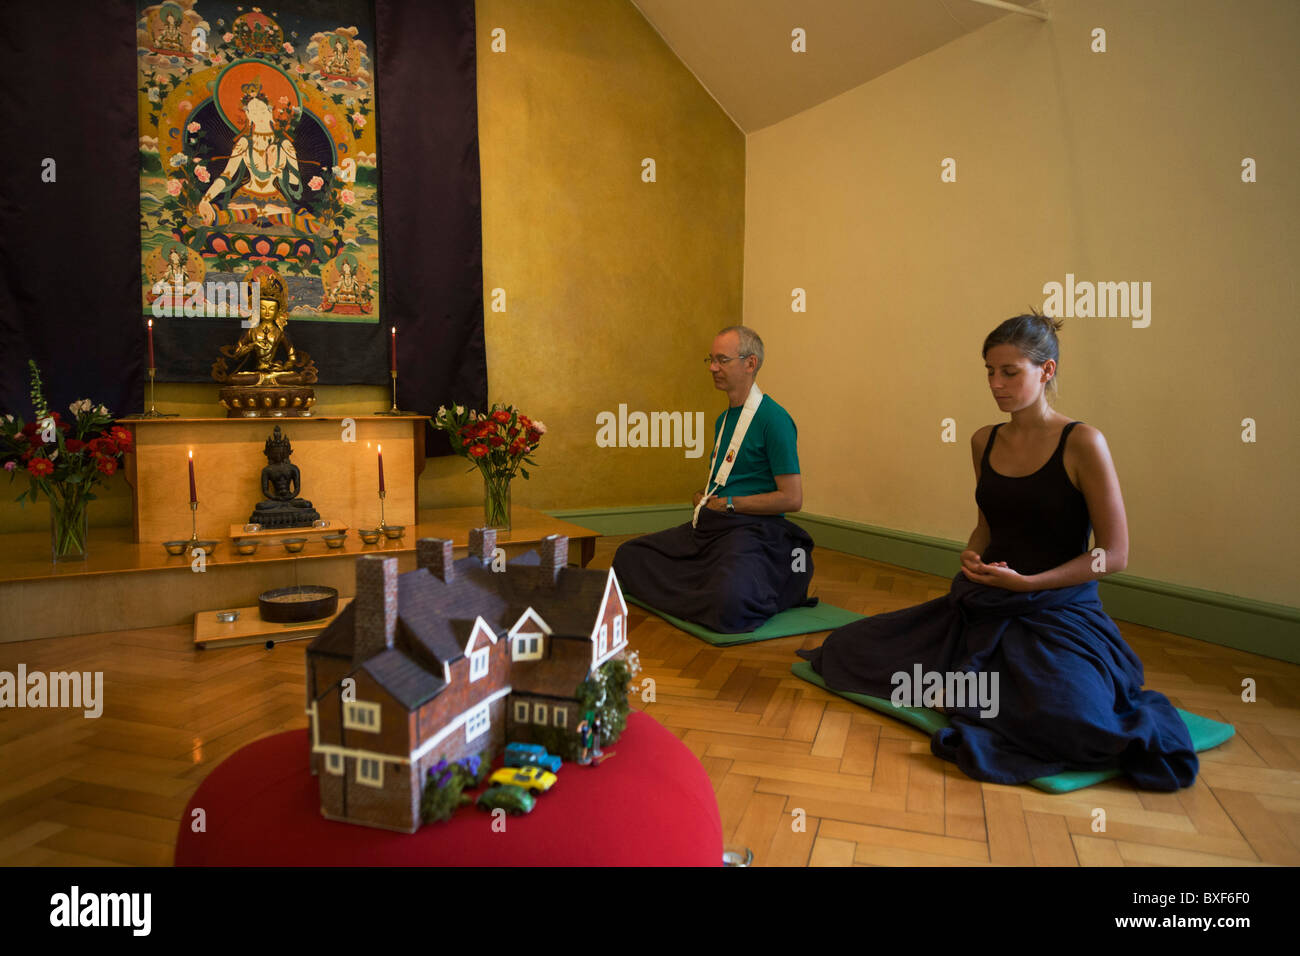 Los budistas meditar en silencio durante 30 minutos en su santuario en el Centro de Retiro Budista Rivendell, Inglaterra. Foto de stock